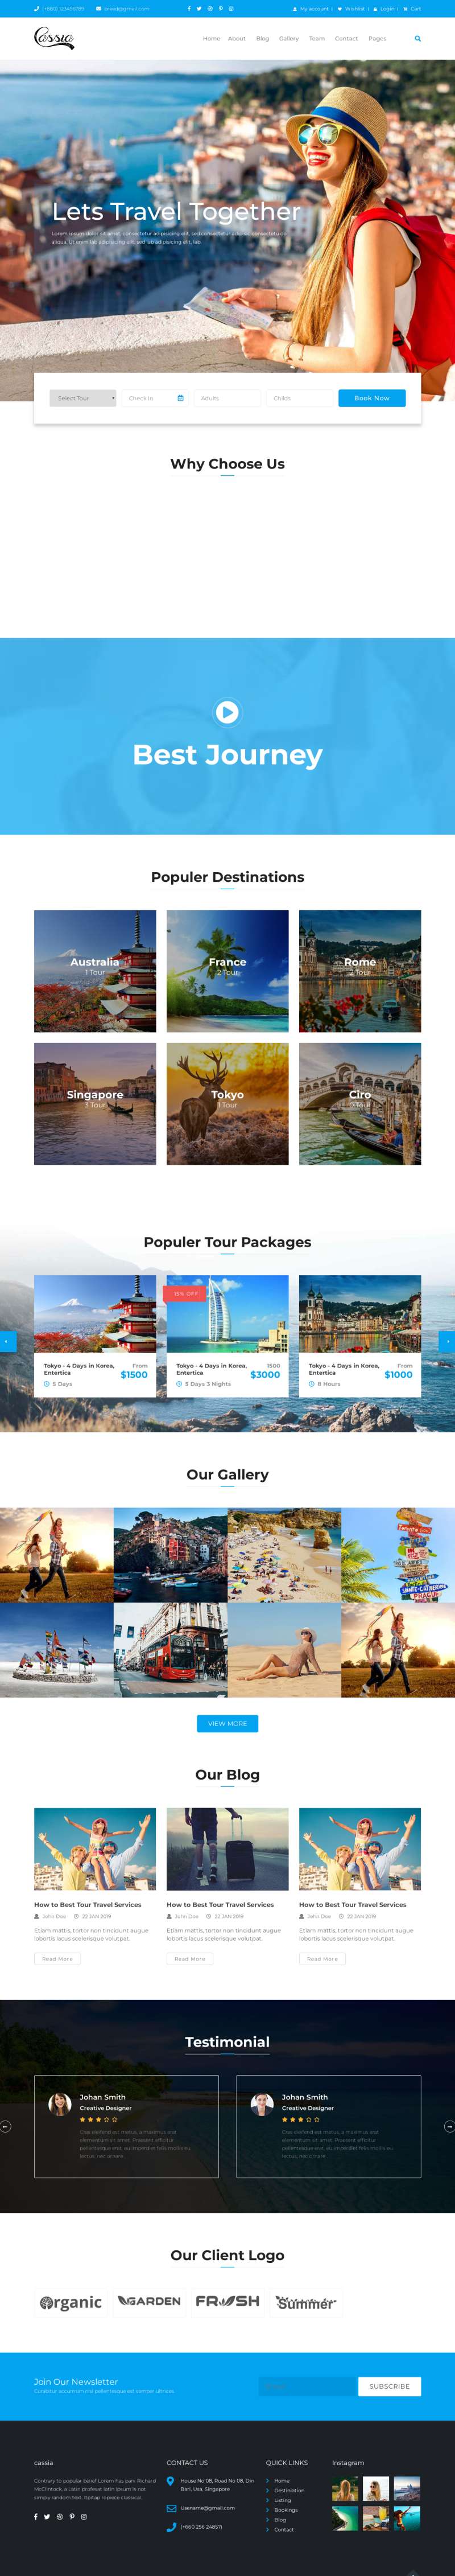 蓝色的旅行社组团网站Bootstrap模板